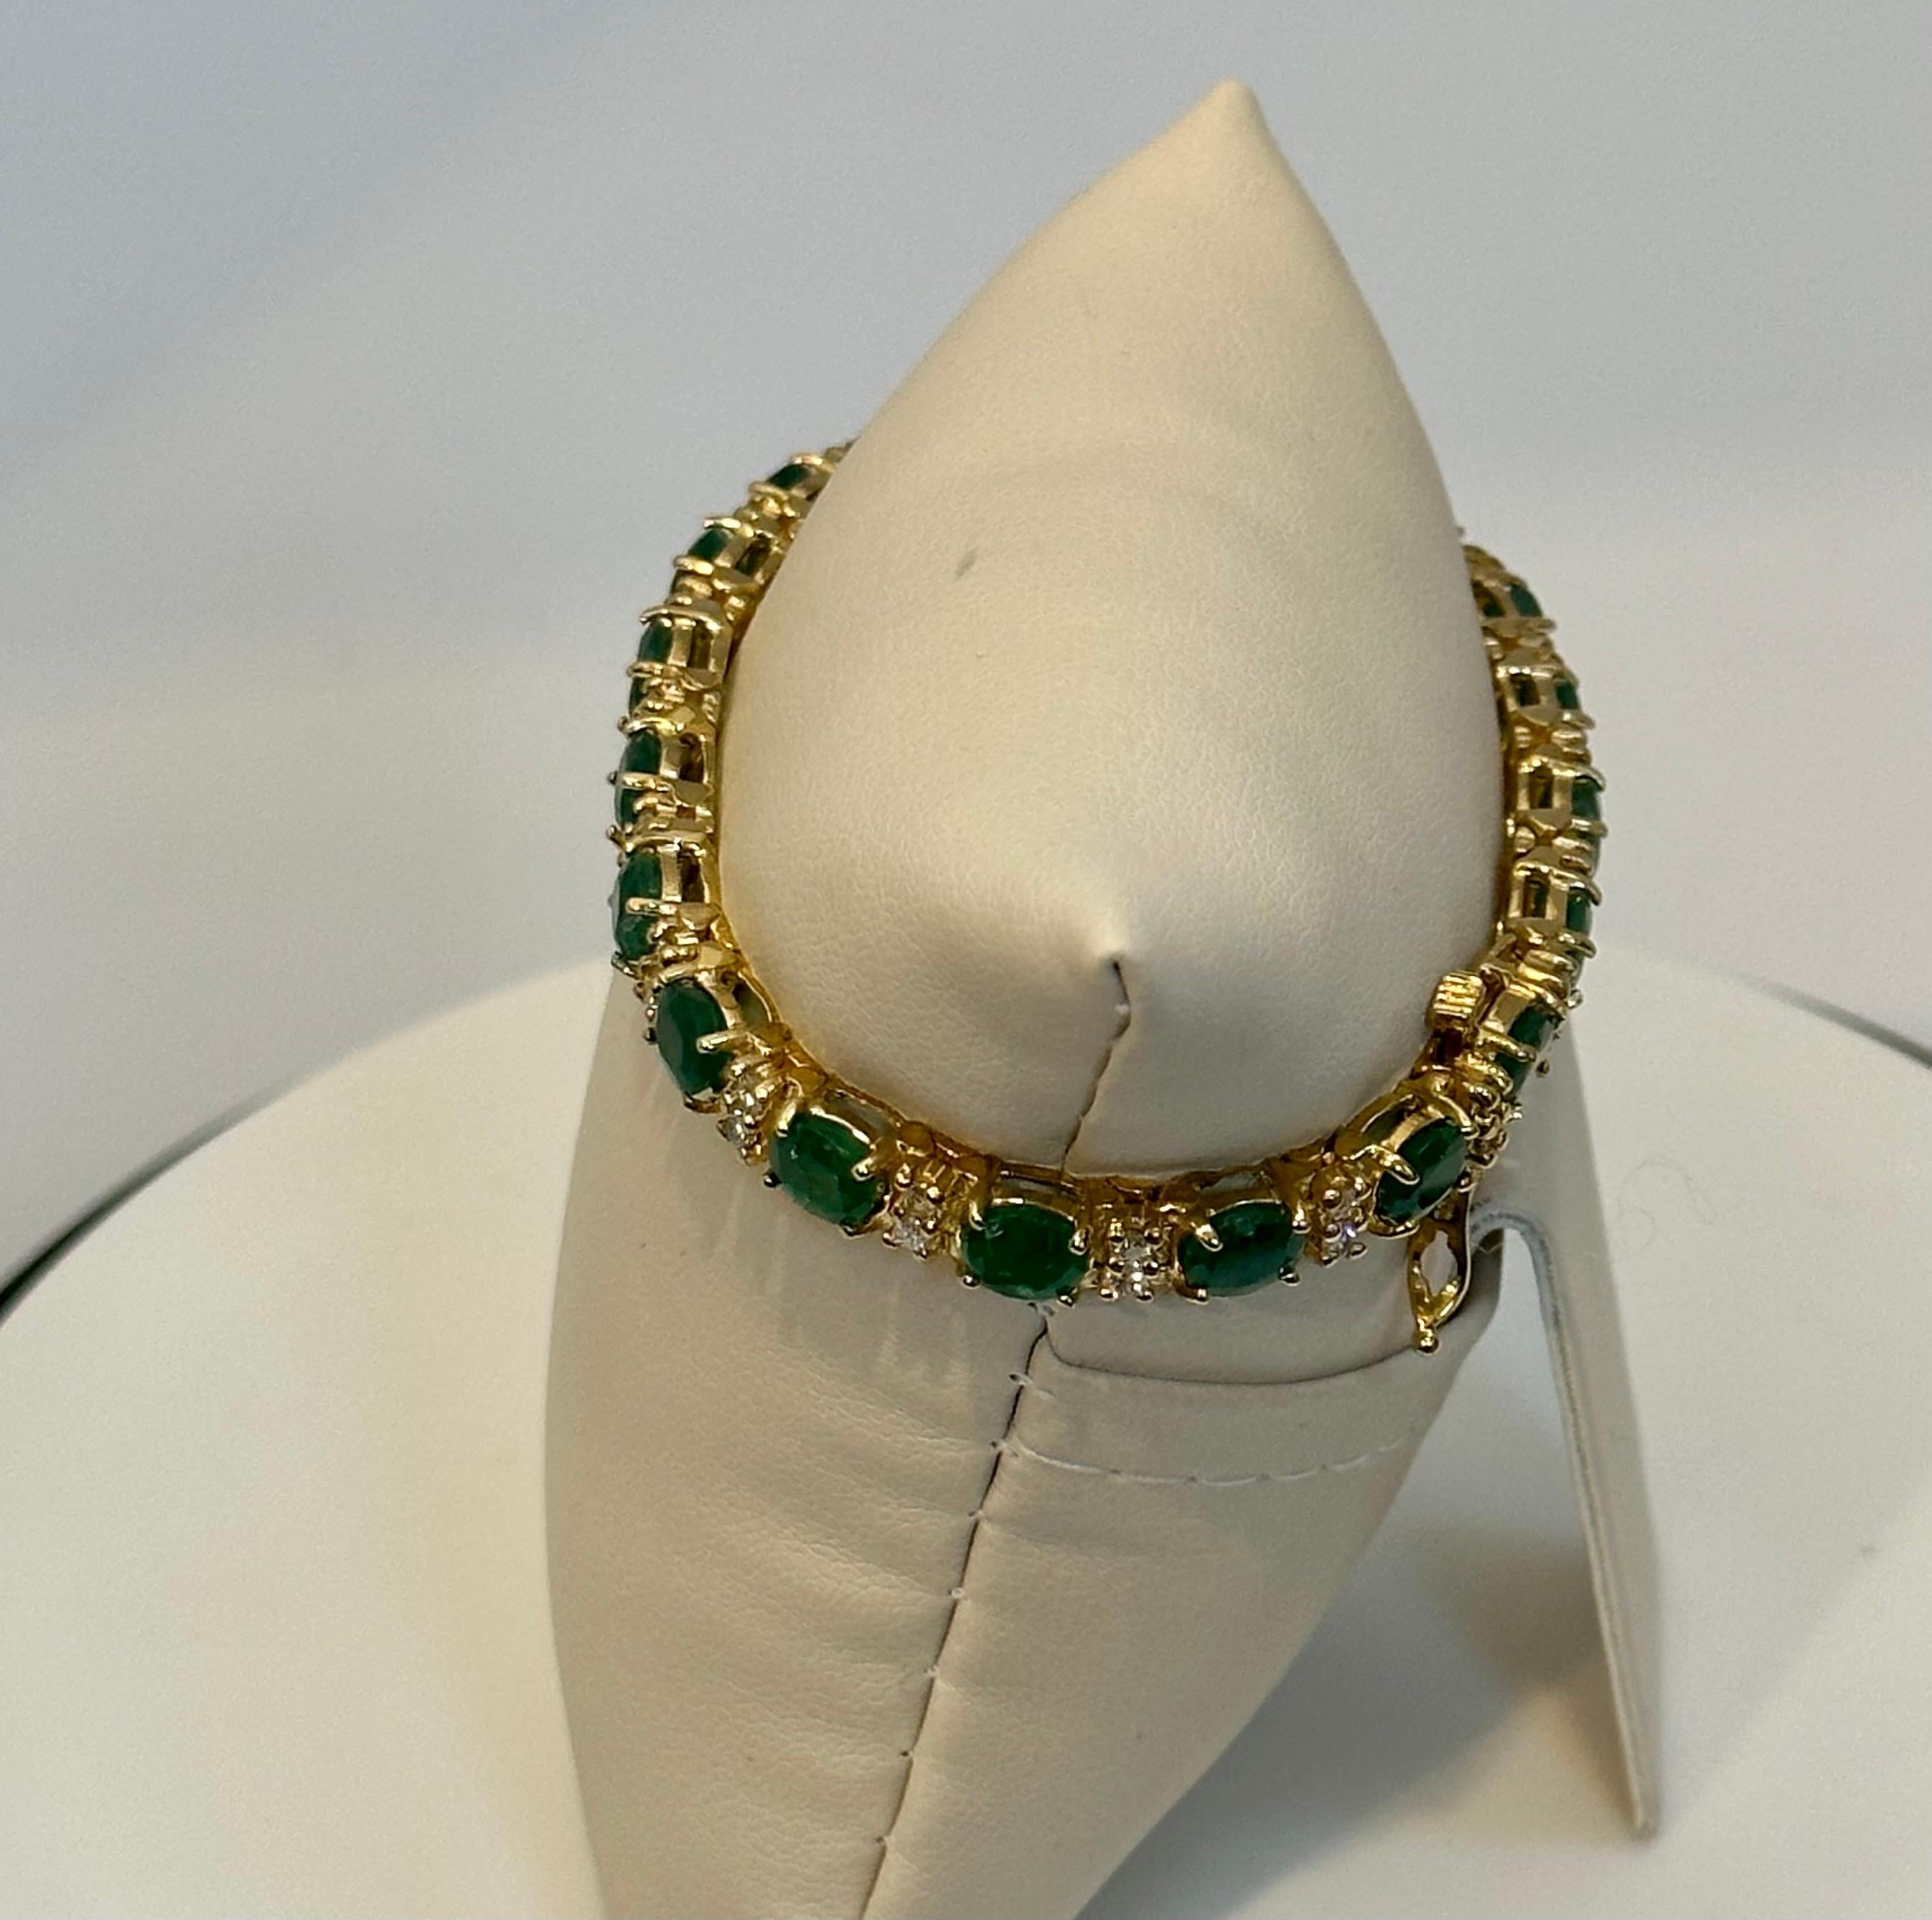 13 Carat Natural Emerald & Diamond Cocktail Tennis Bracelet 14 Karat Yellow Gold 11